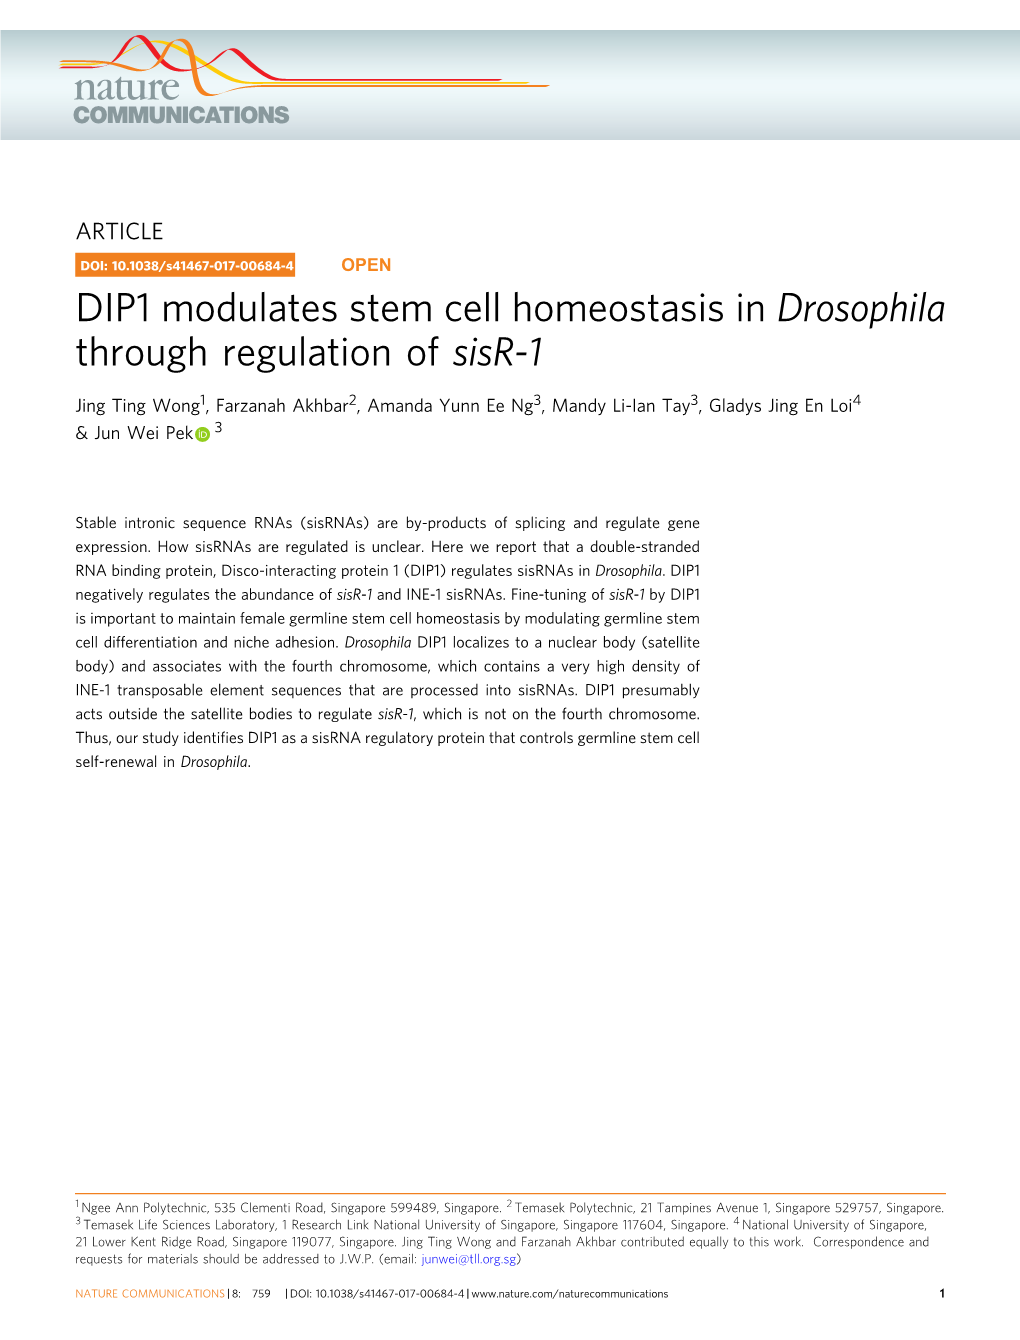 DIP1 Modulates Stem Cell Homeostasis in Drosophila Through Regulation of Sisr-1